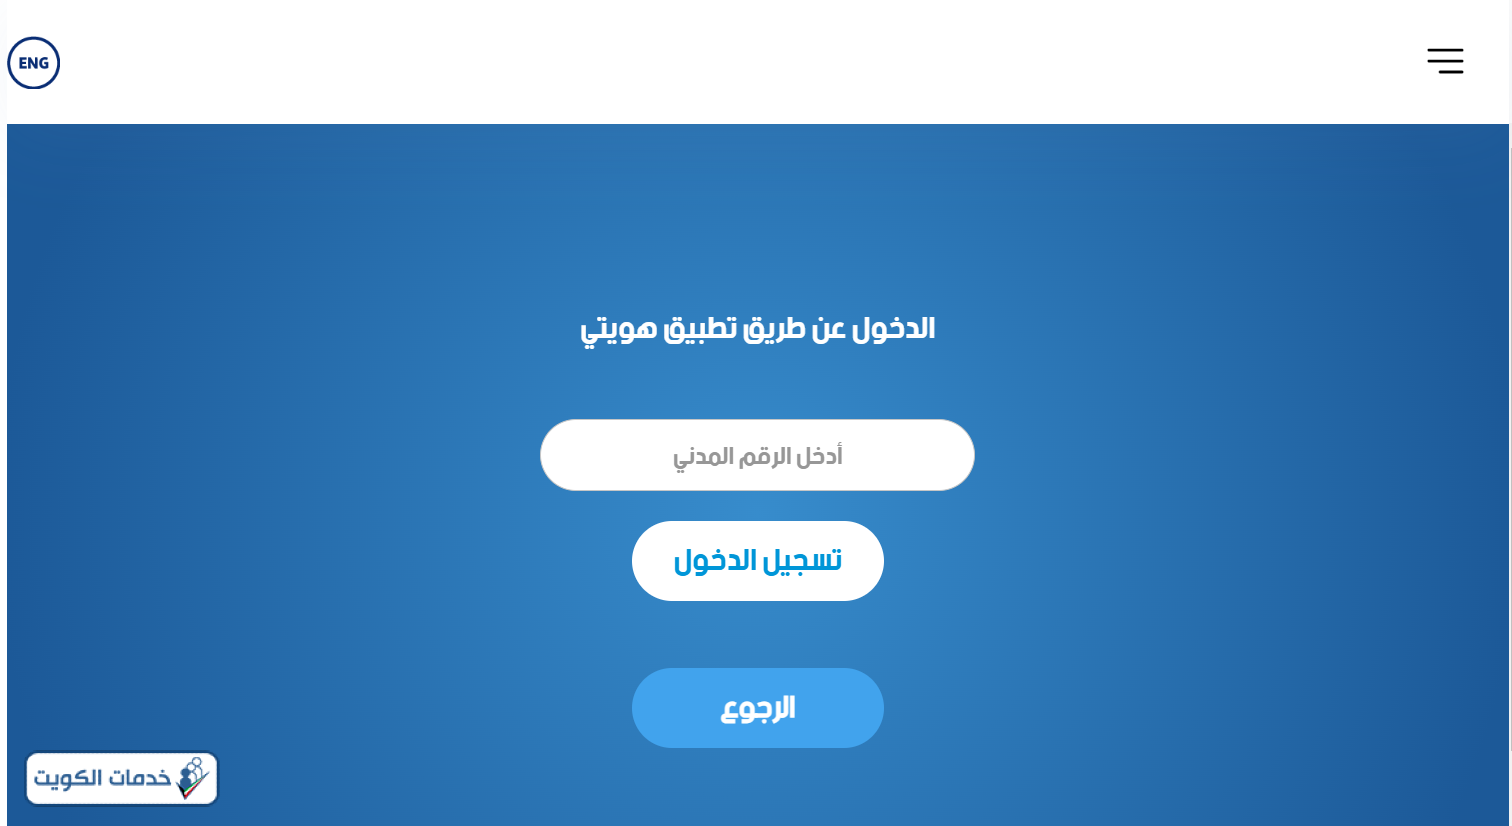 حساب سن التقاعد في الكويت للرجال والنساء